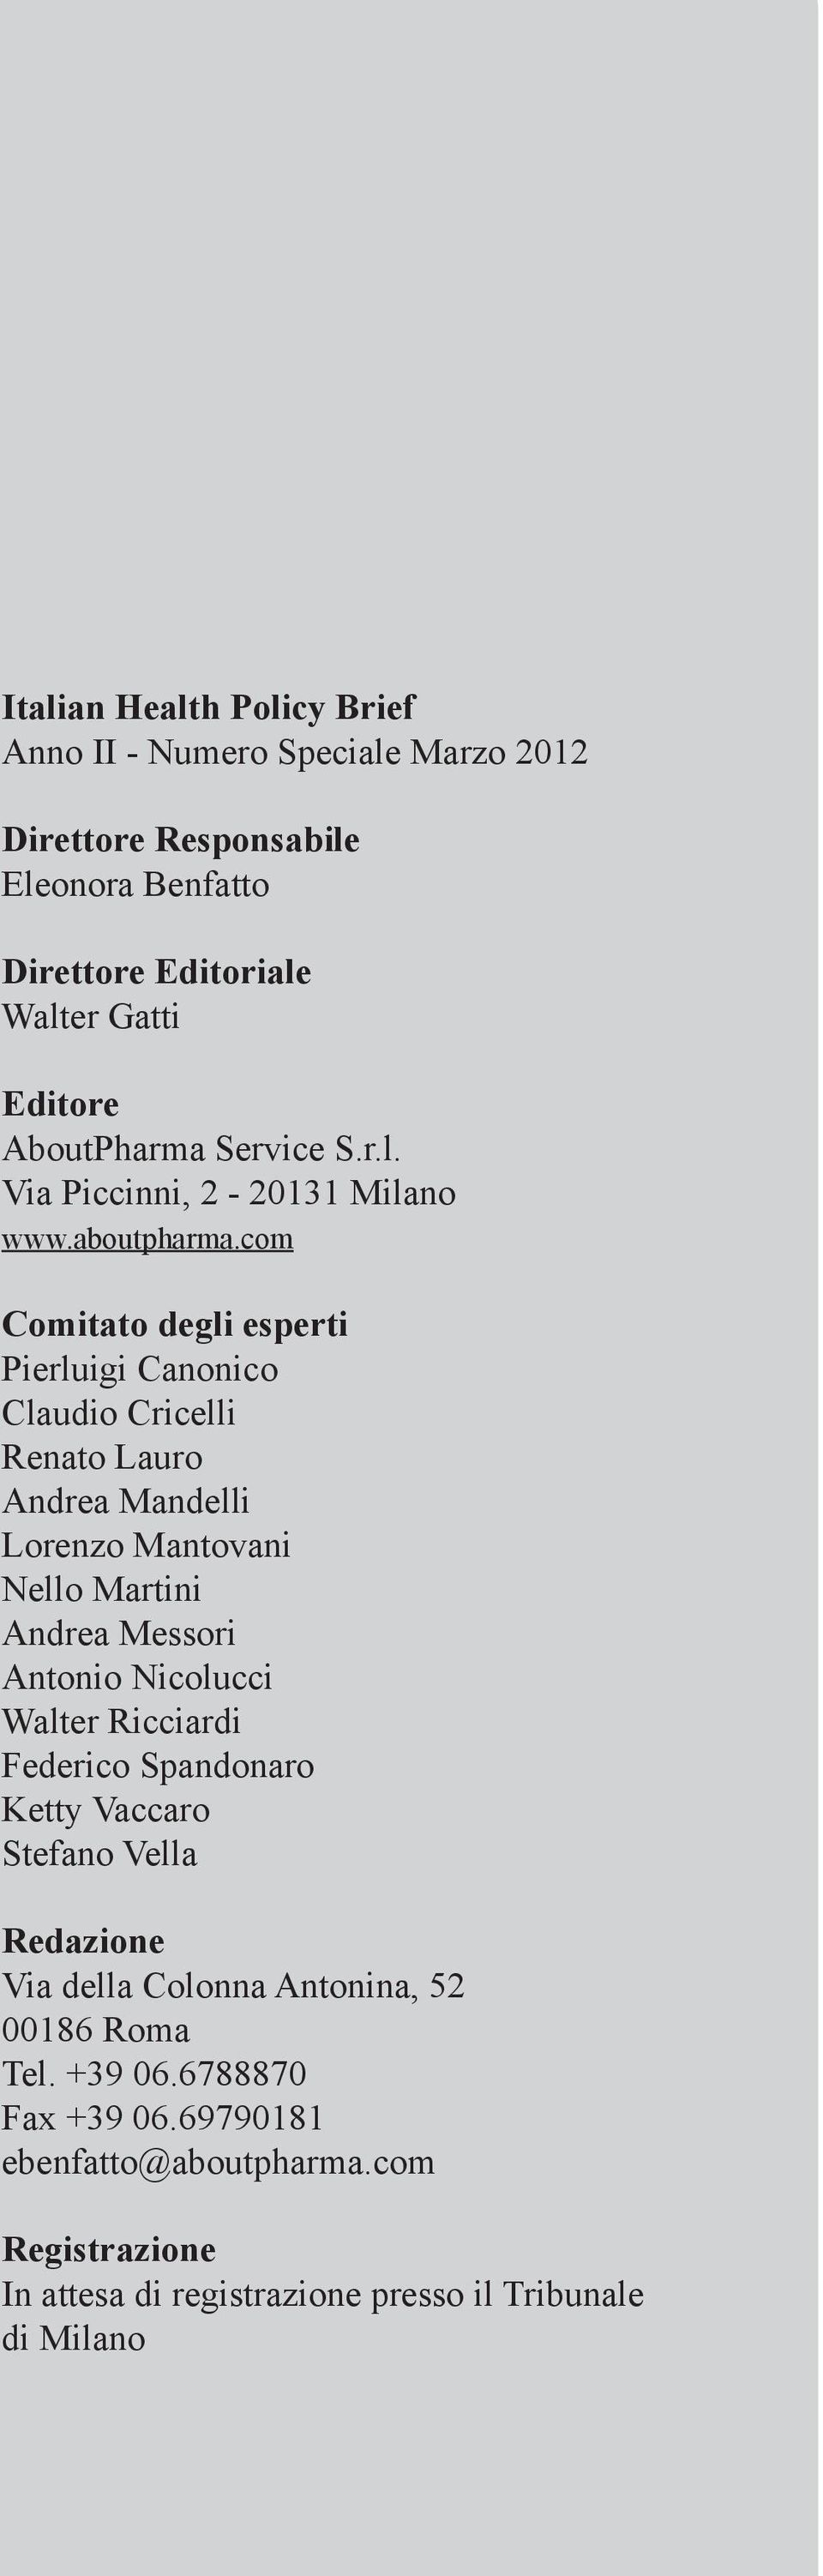 com Editore AboutPharma Service Slr Comitato degli esperti Via Cherubini, 6-20145 Milano Pierluigi Canonico www.aboutpharma.